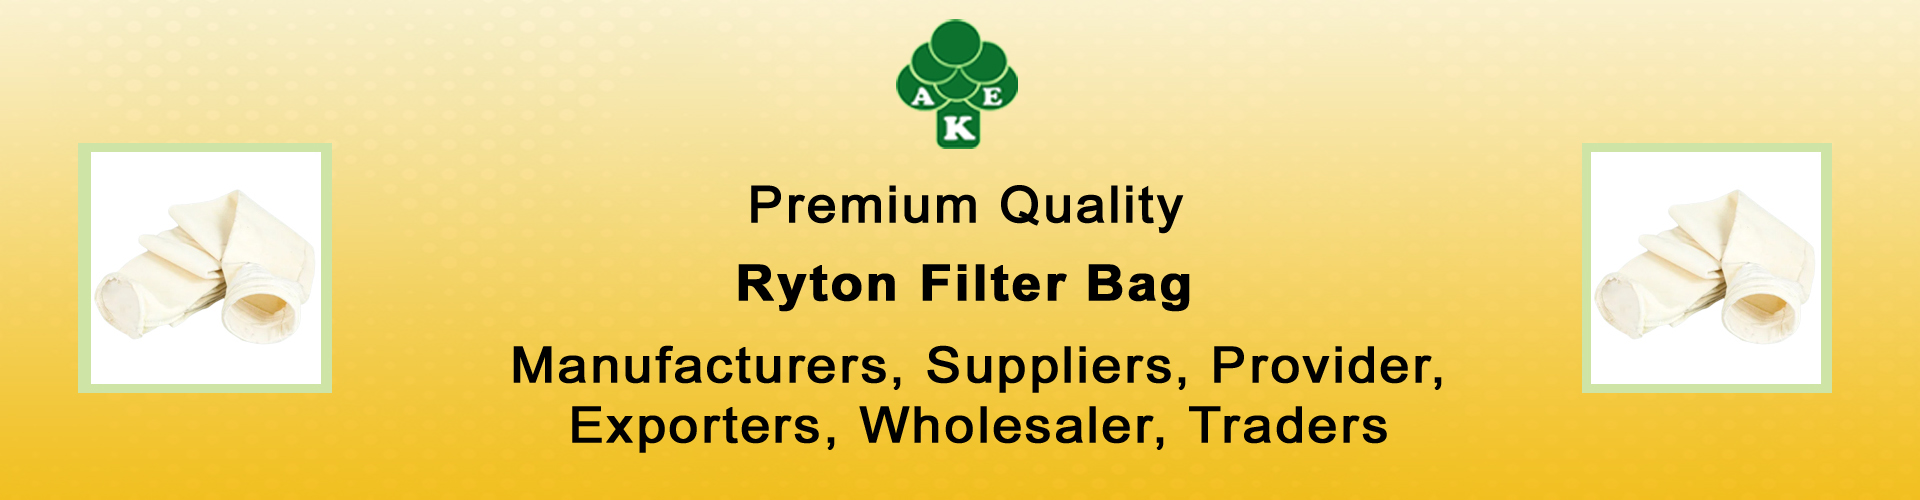 Ryton Filter Bag